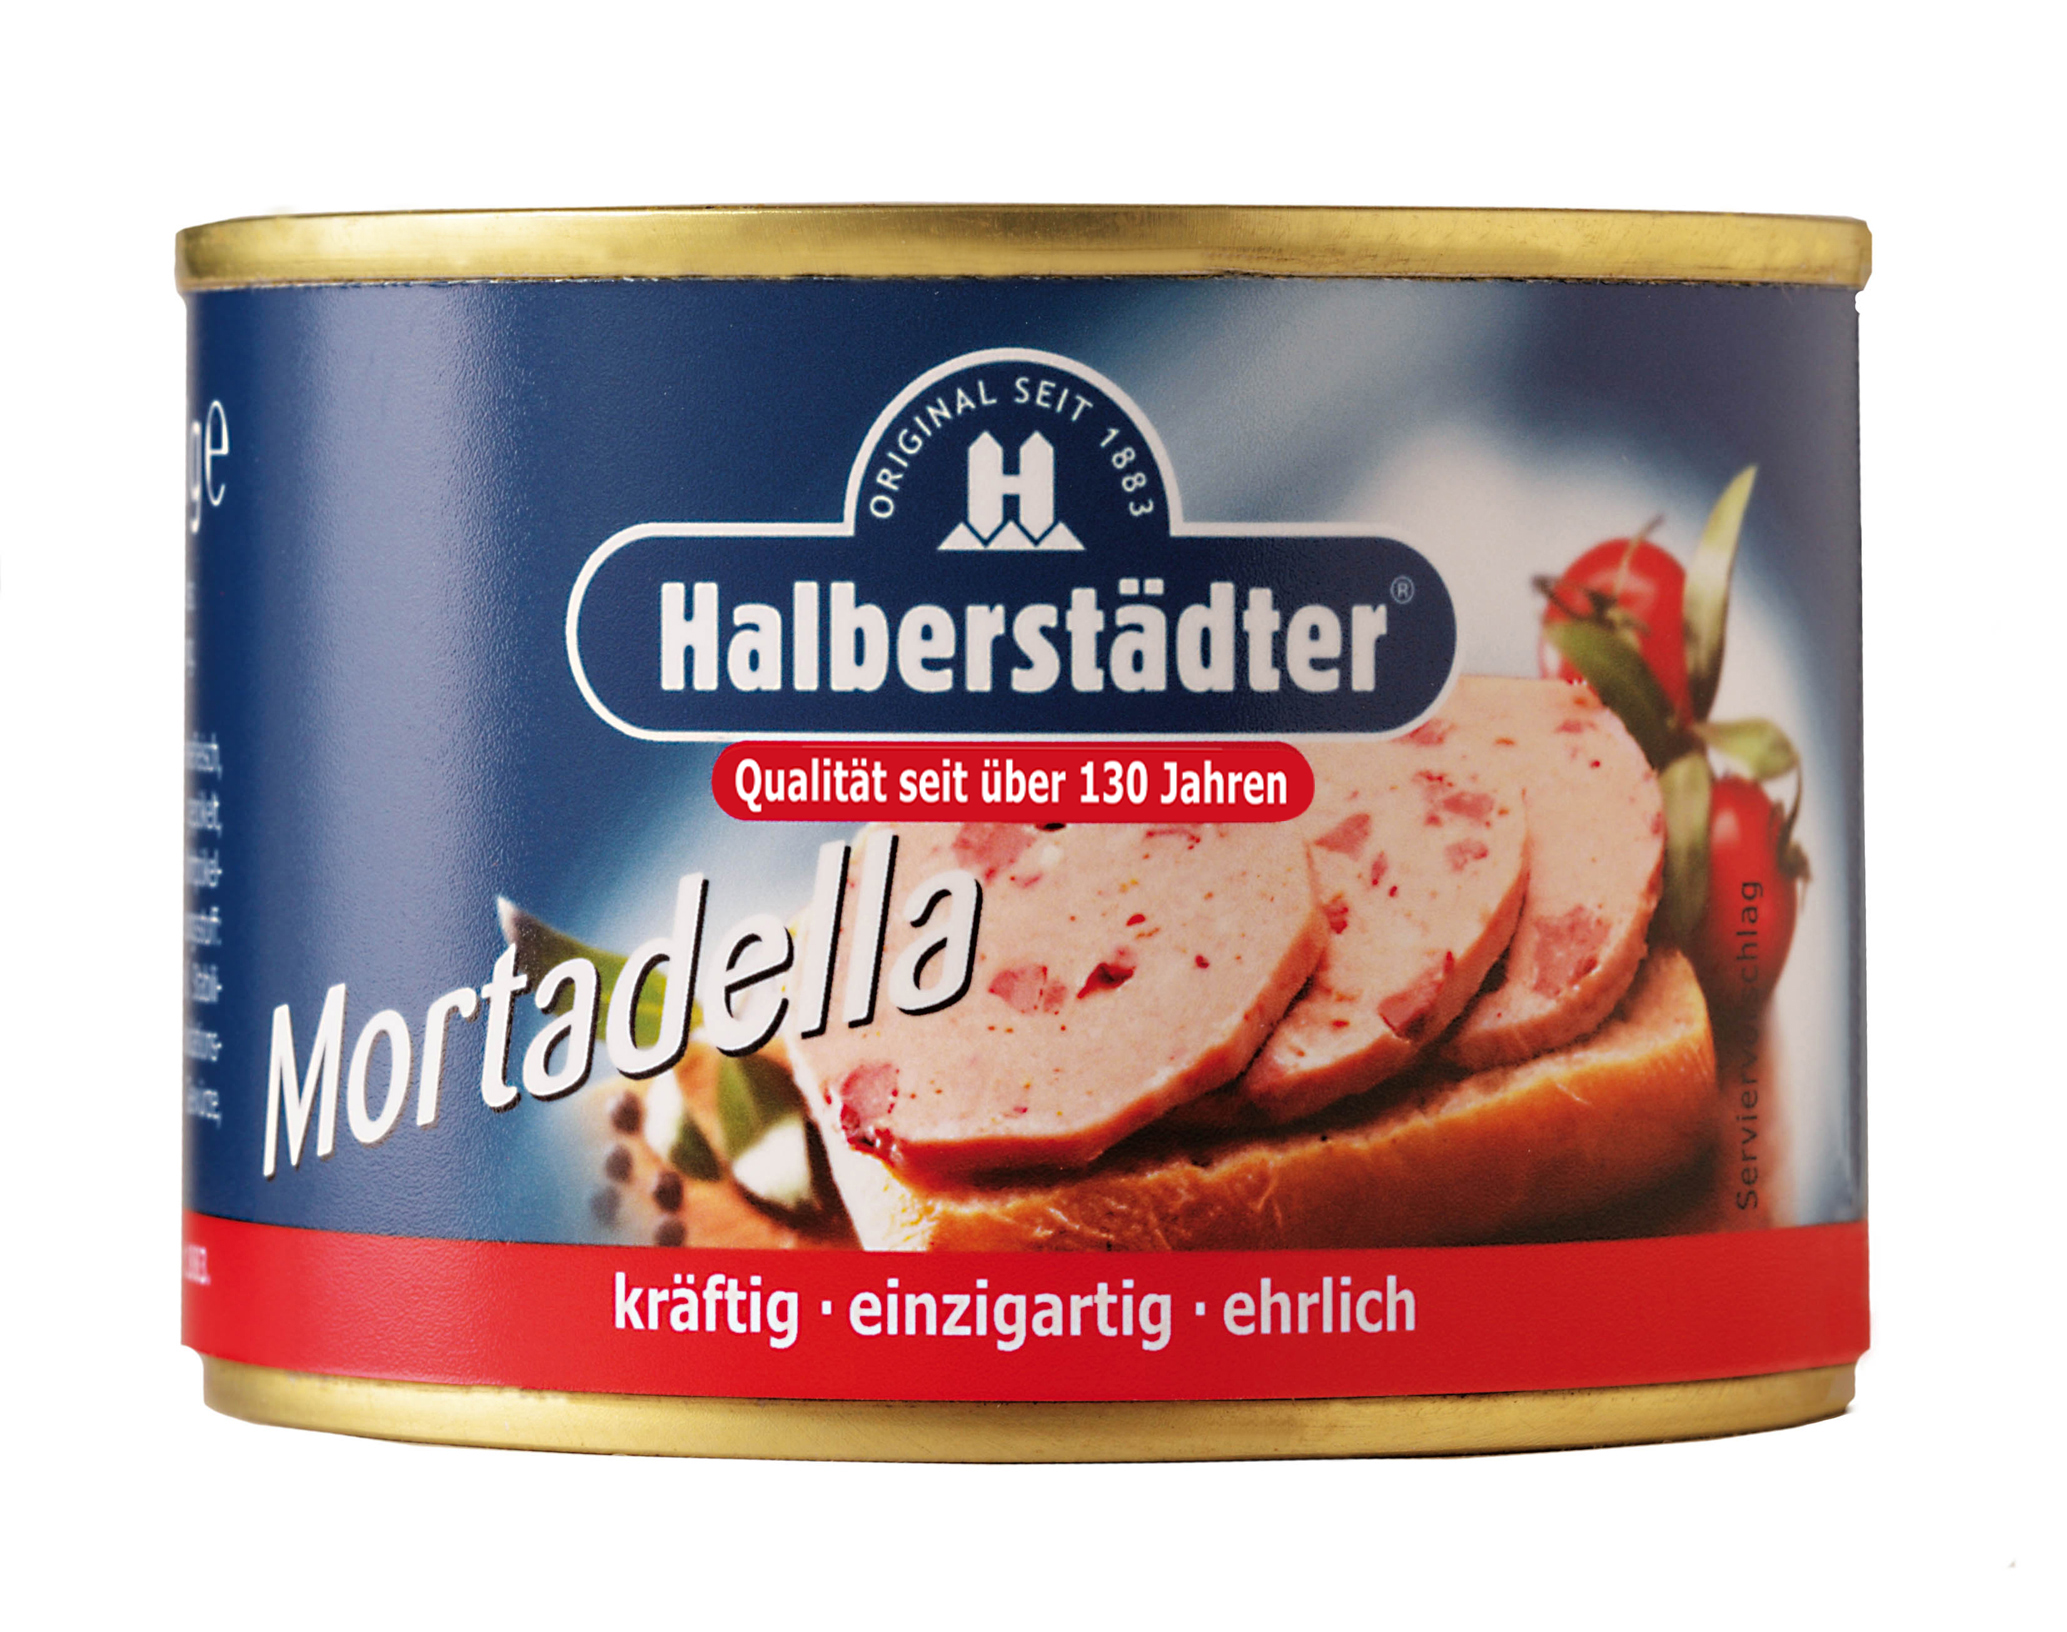 Mortadella ( Halberstadter ) 160g